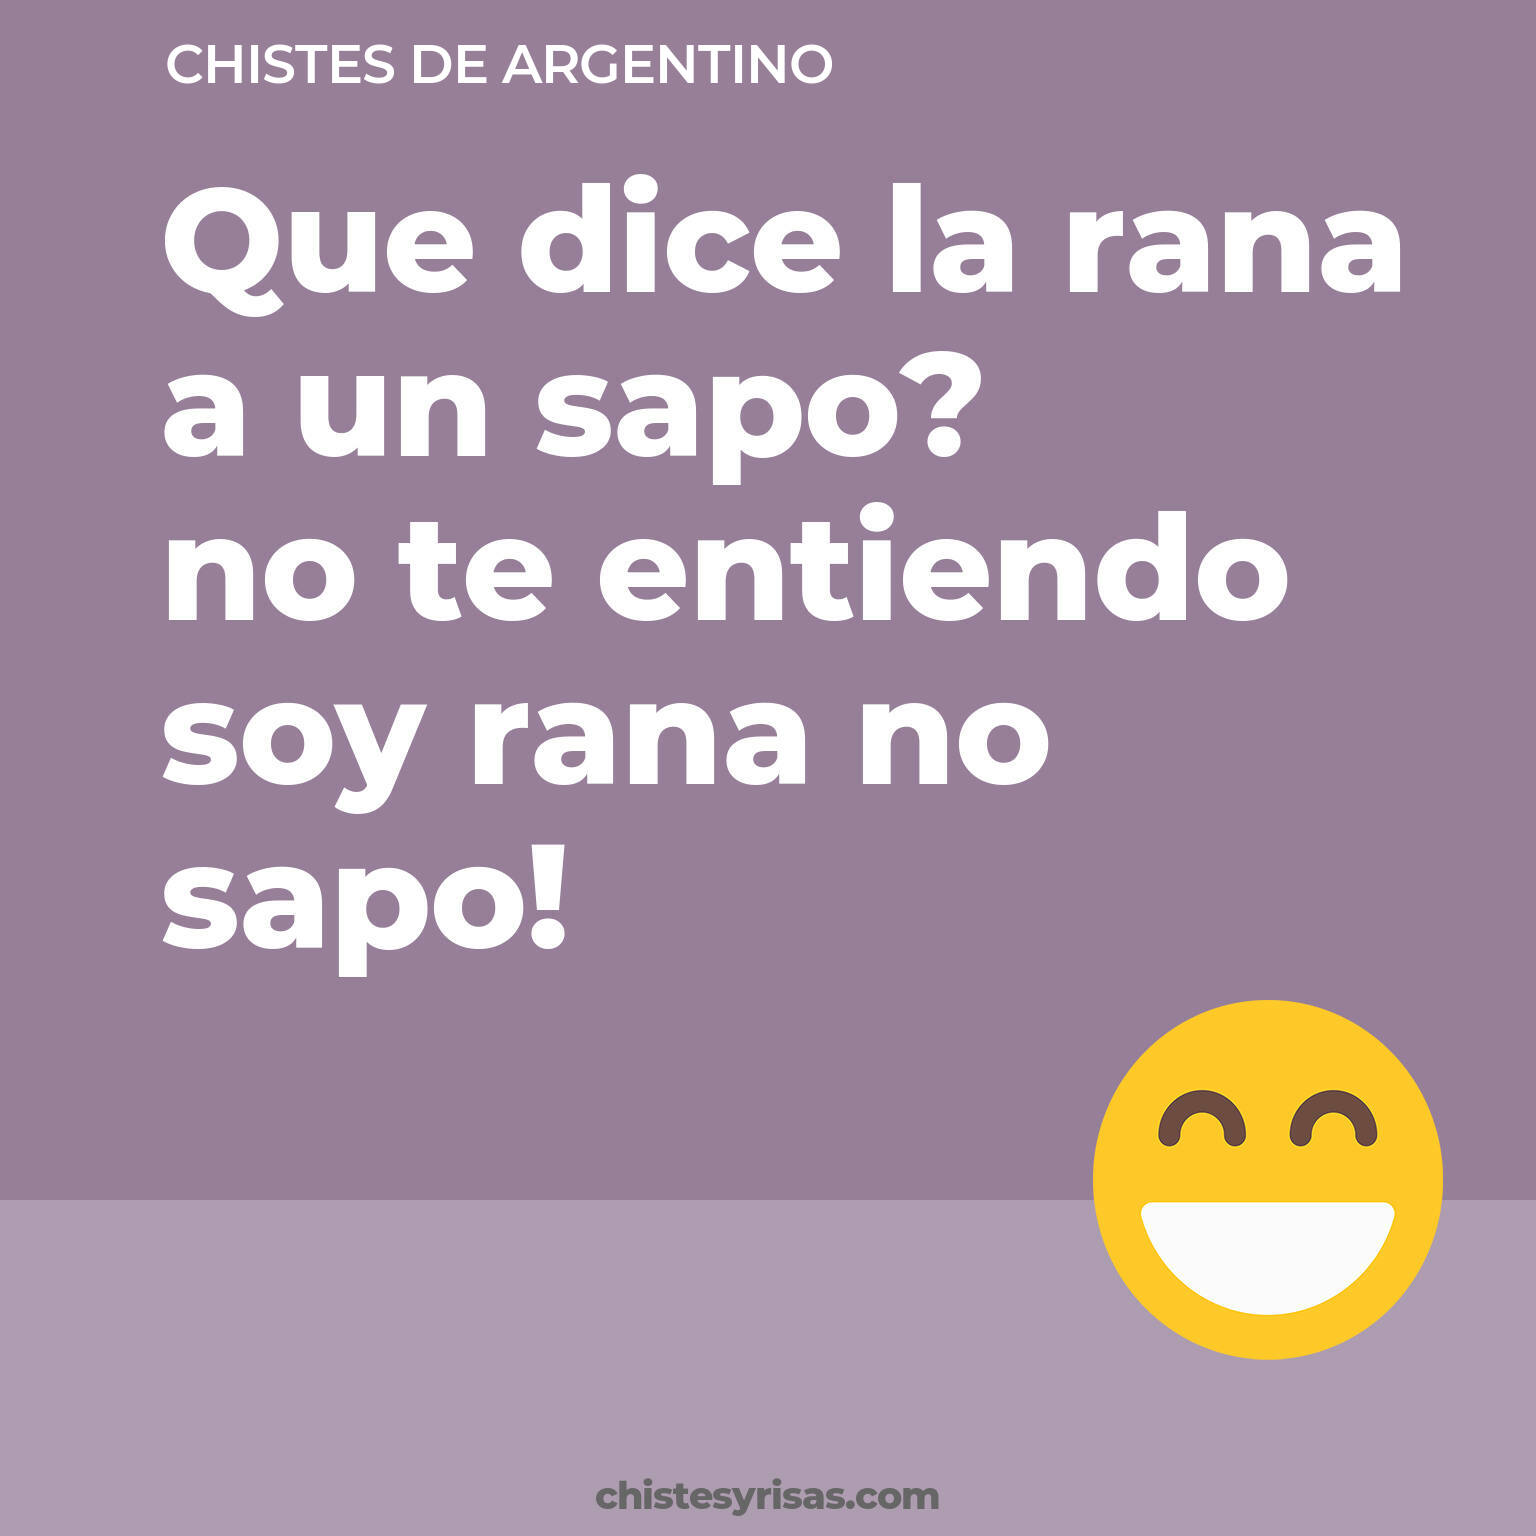 chistes de Argentino buenos